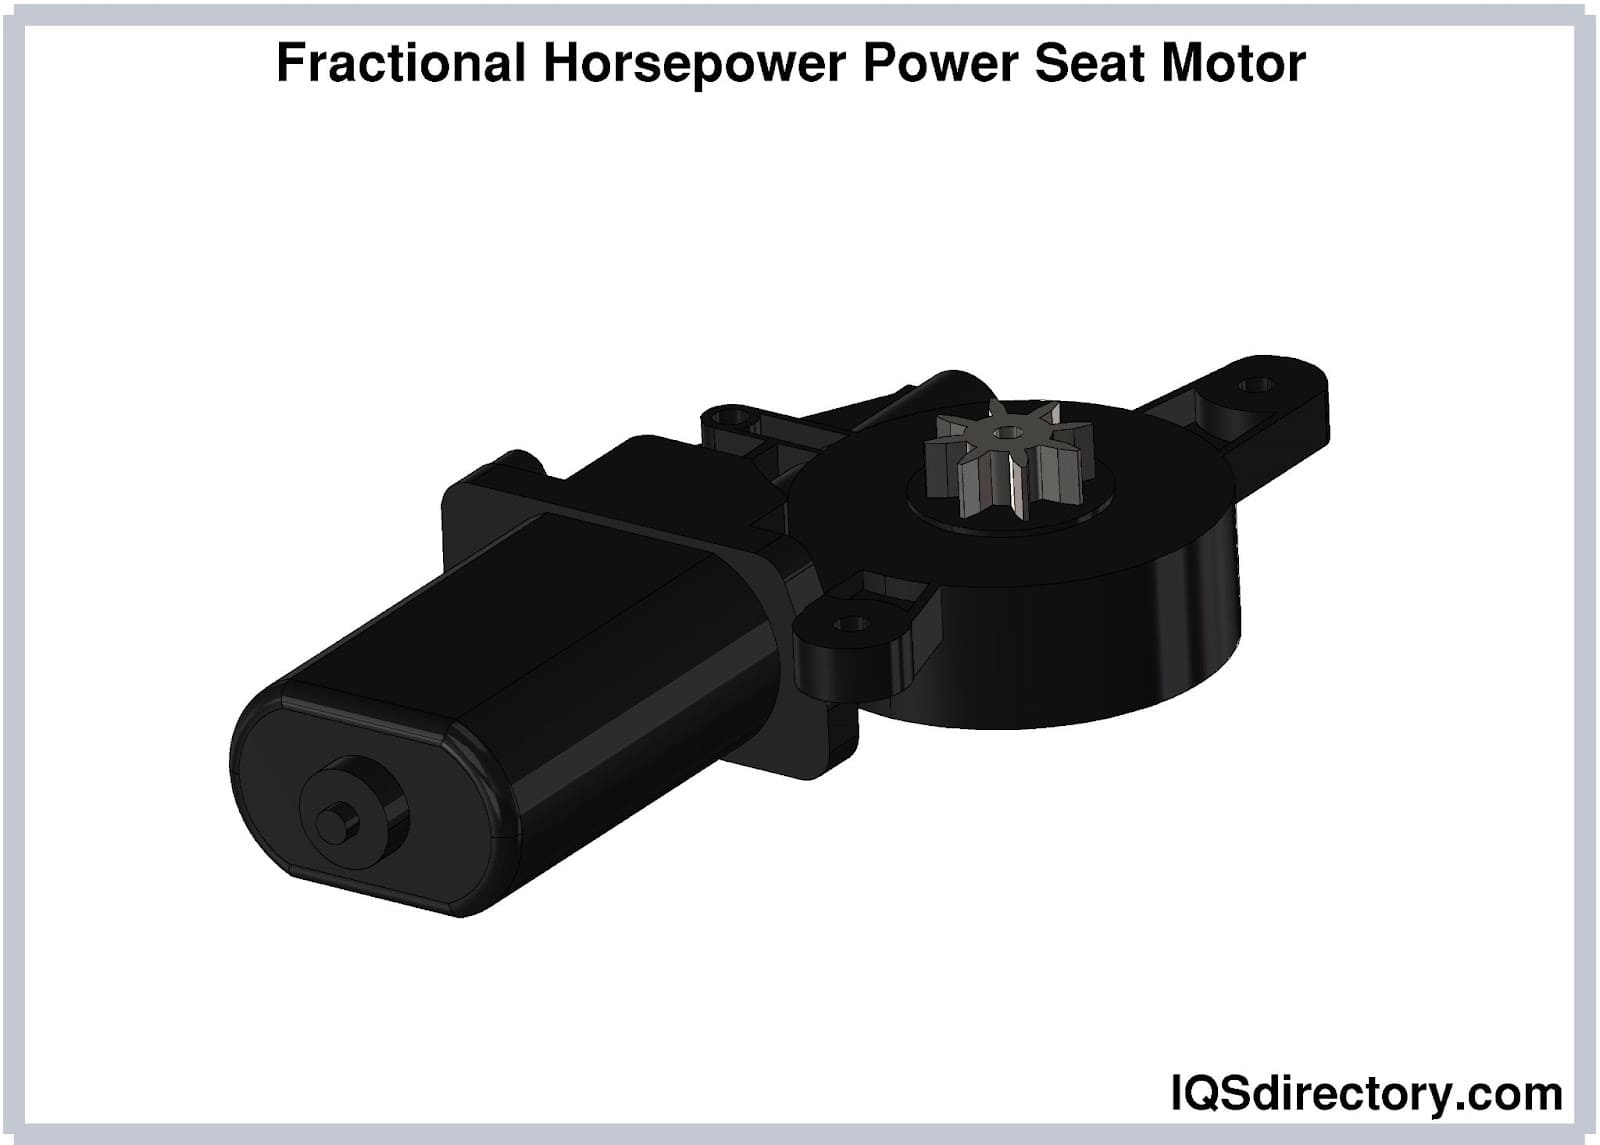 Fractional Horsepower Power Seat Motor